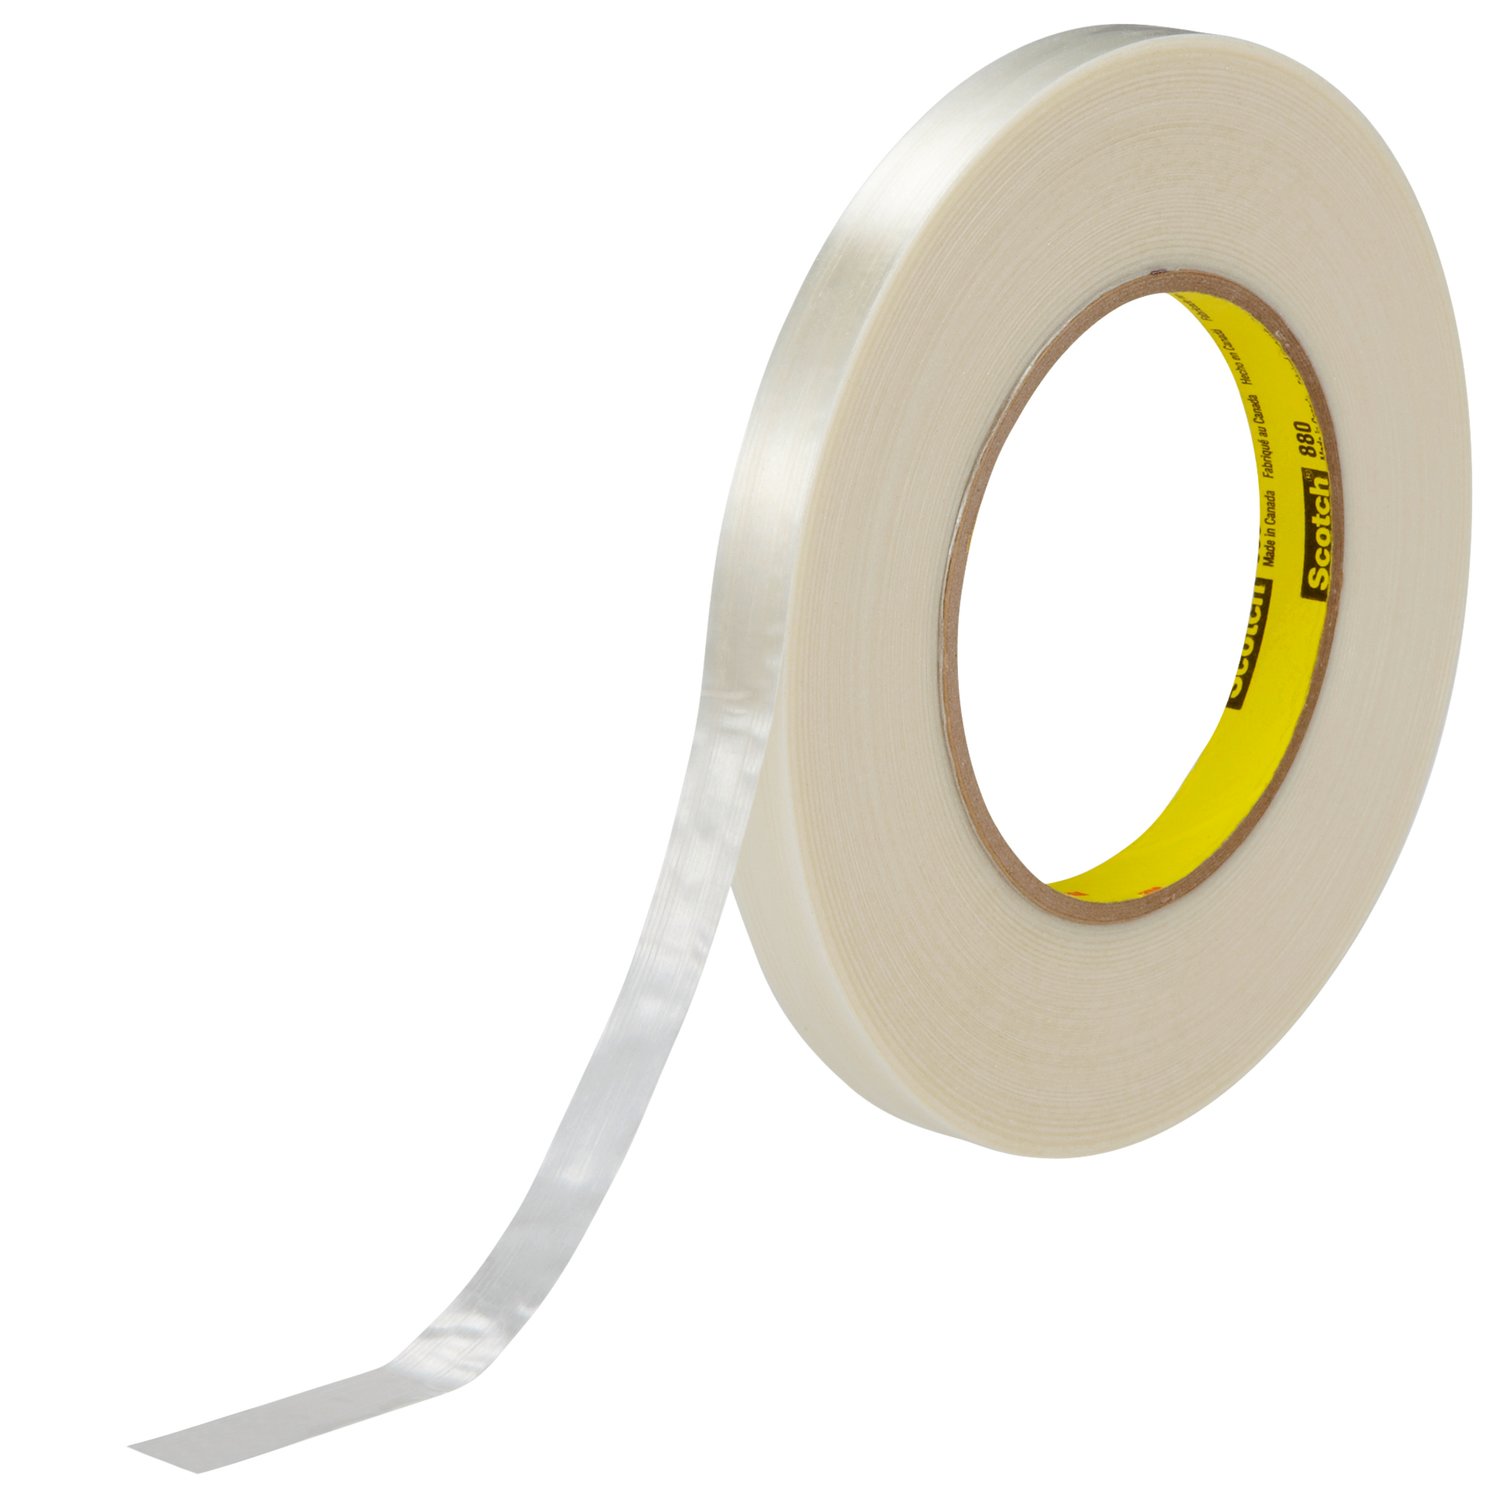 7000123807 - Scotch Filament Tape 880, Clear, 12 mm x 55 m, 7.7 mil, 72 rolls per
case